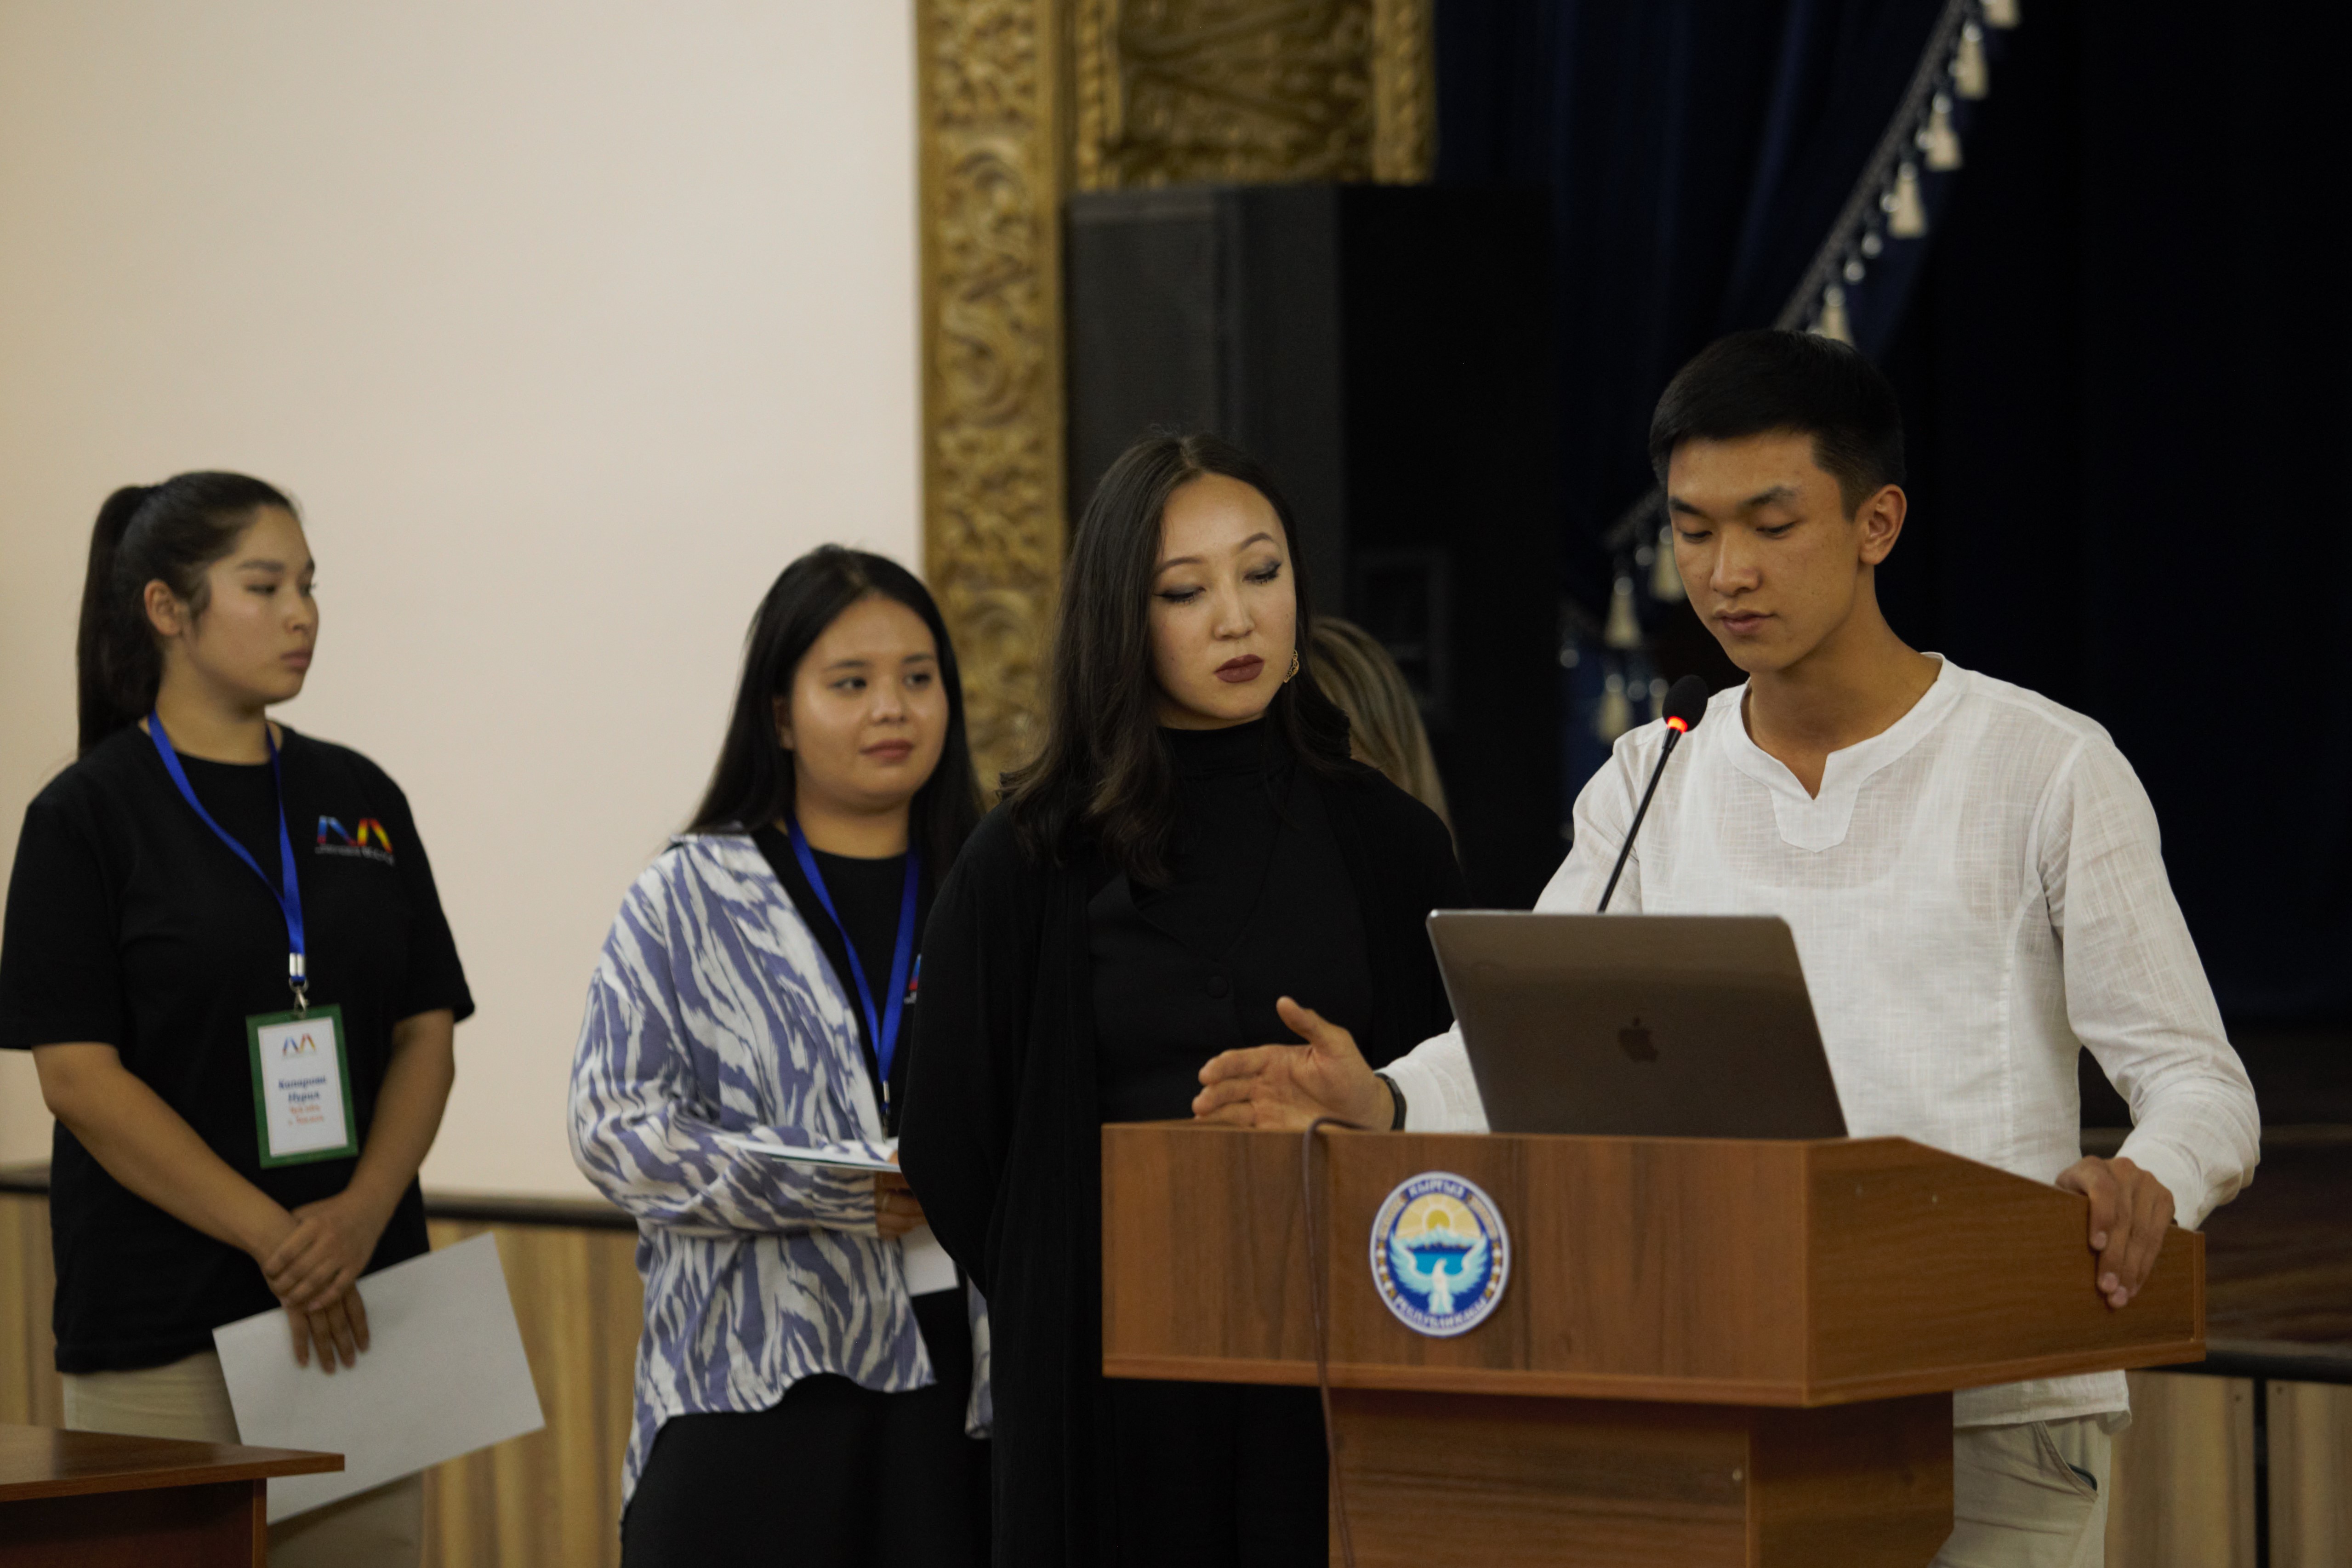 НИИРК – За ними будущее Кырыгзстана: жюри Форума лидеров развития выбрало победителей конкурса проектов